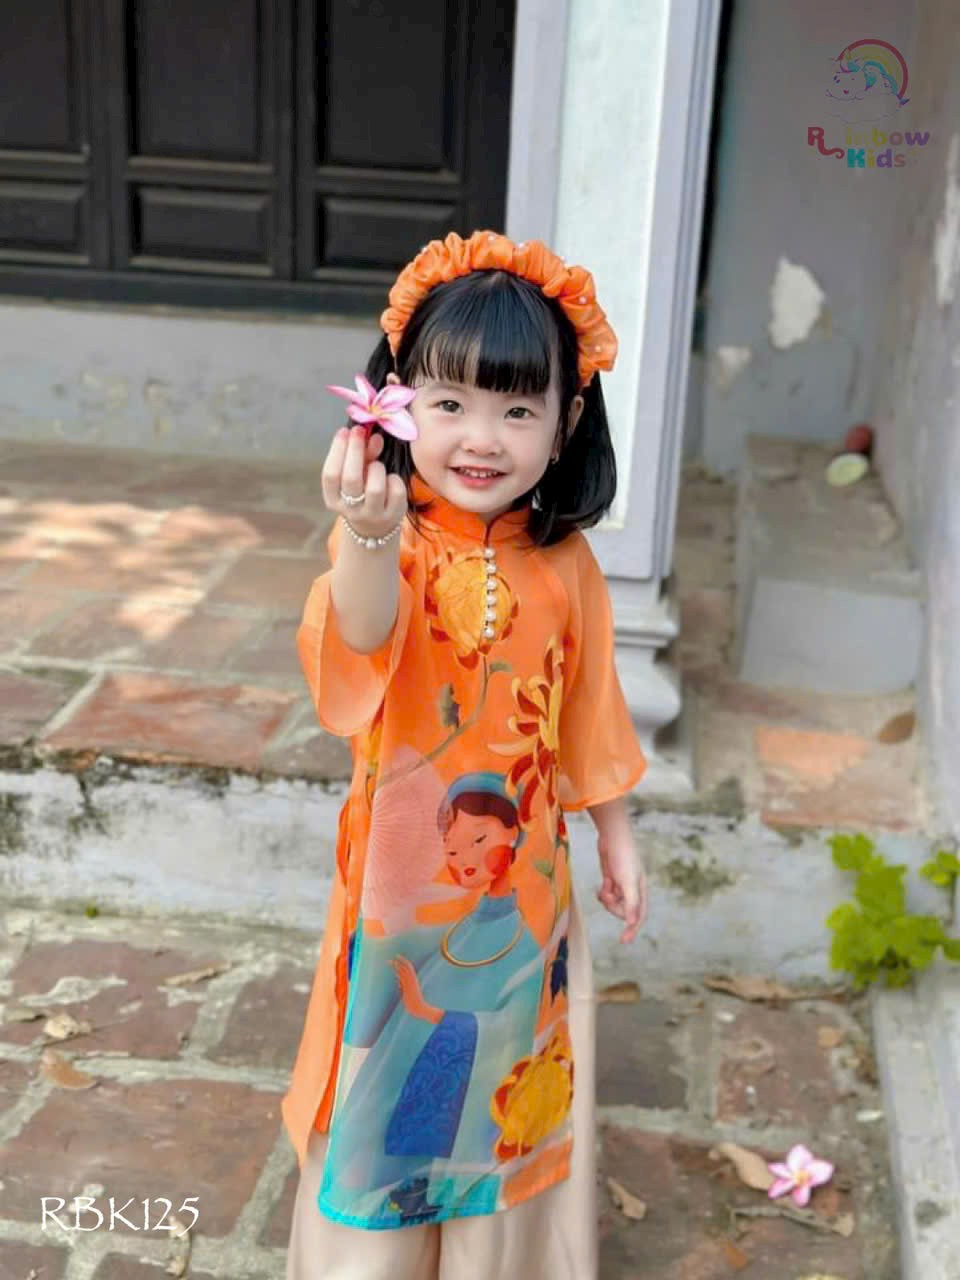 Áo dài cách tân bé gái, Set áo dài tết cho bé 1-9 tuổi hình hoa cúc vải tơ hàng thiết kế điệu đà thời trang